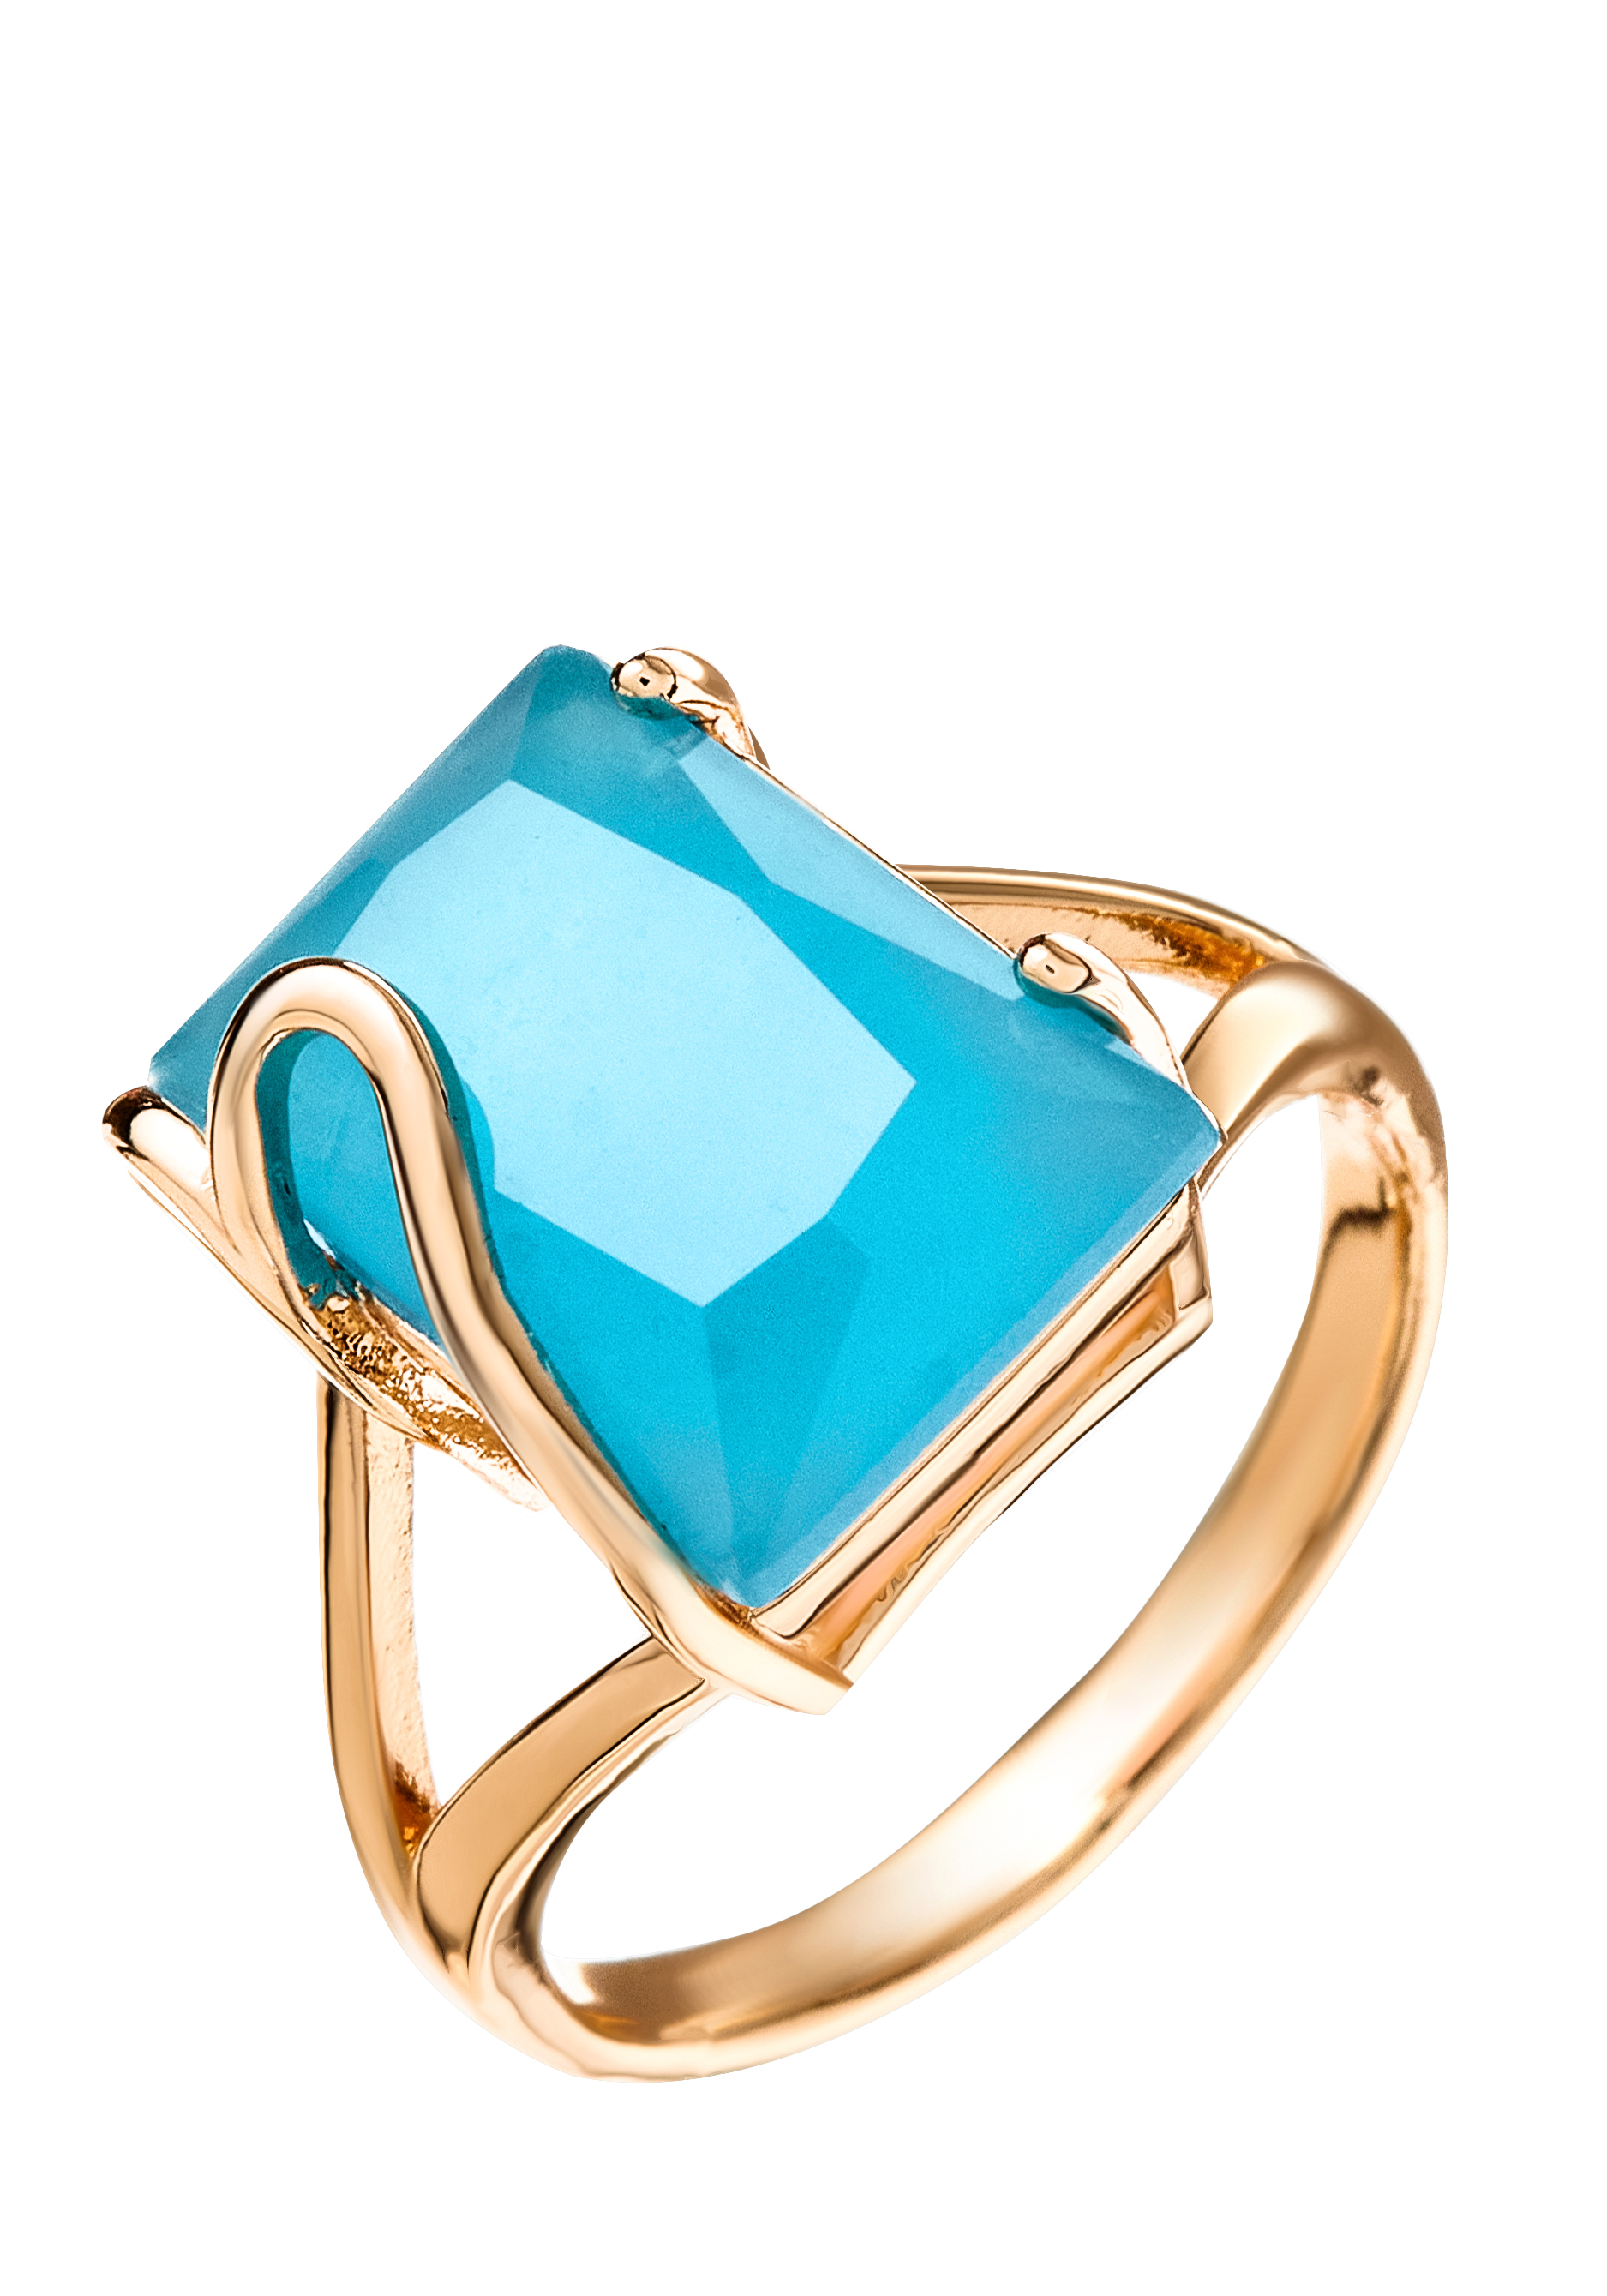 Комплект "Изумление" (серьги, кольцо) Бриллианит Натюр, цвет голубой, размер 18 кластер - фото 7